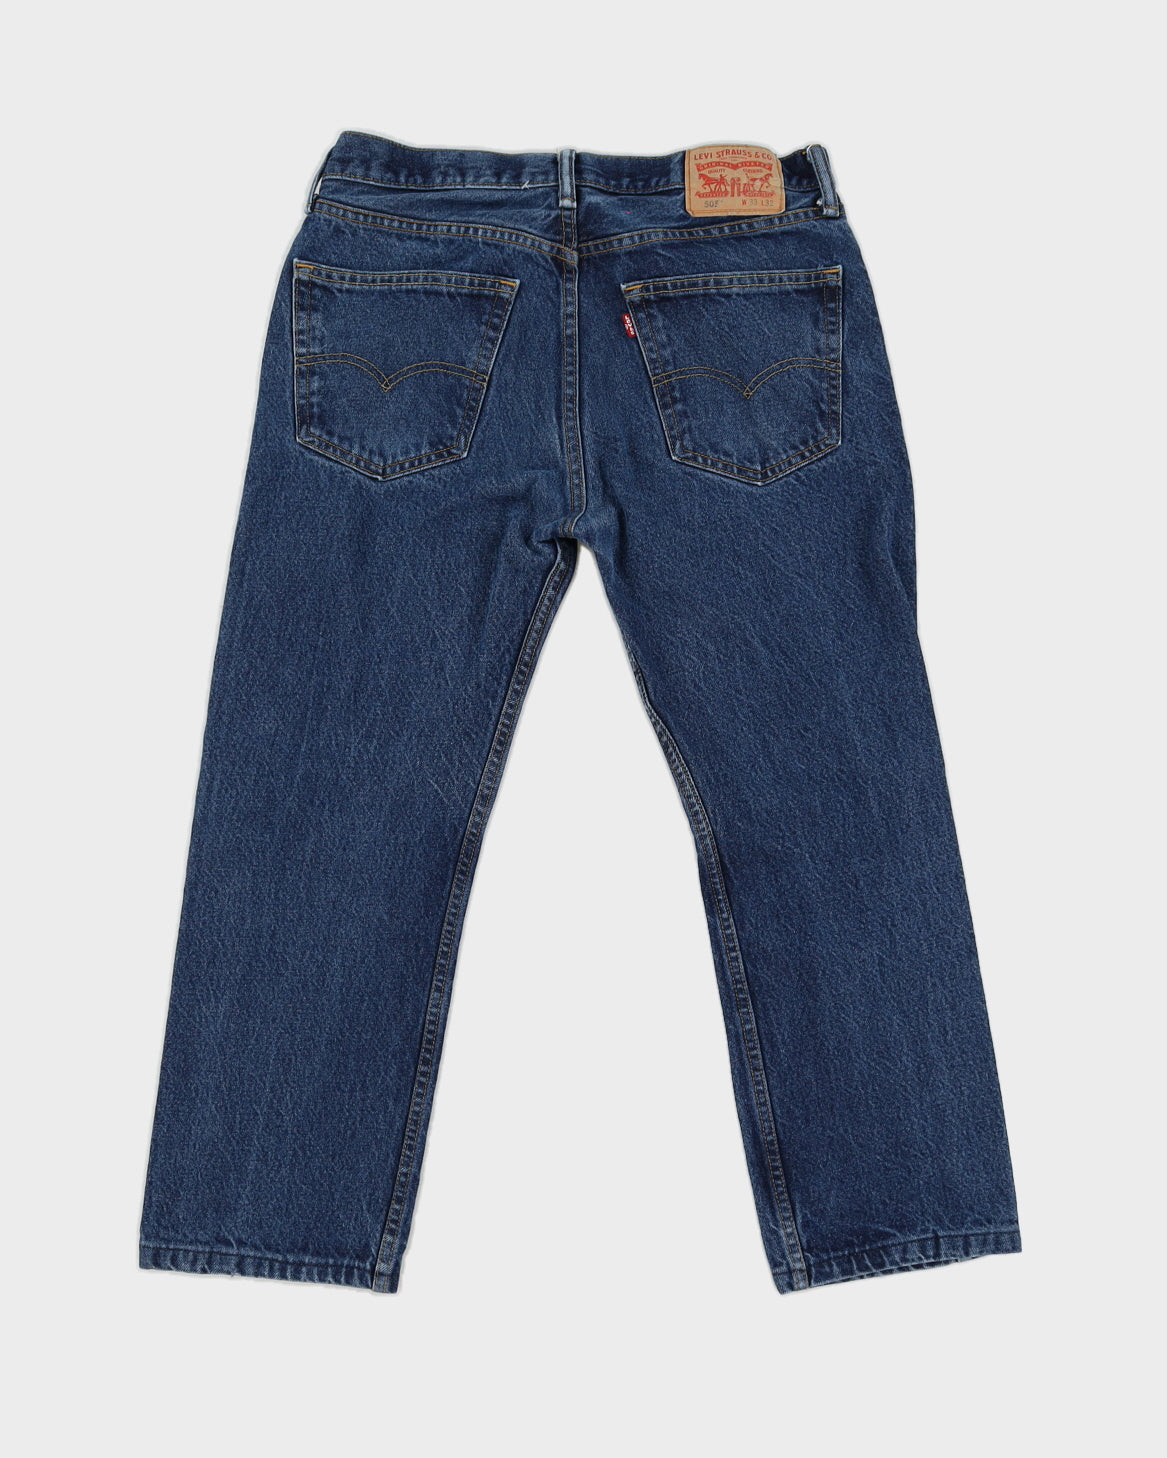 Levi's 505 Denim Jeans Dark Wash - W33 L32